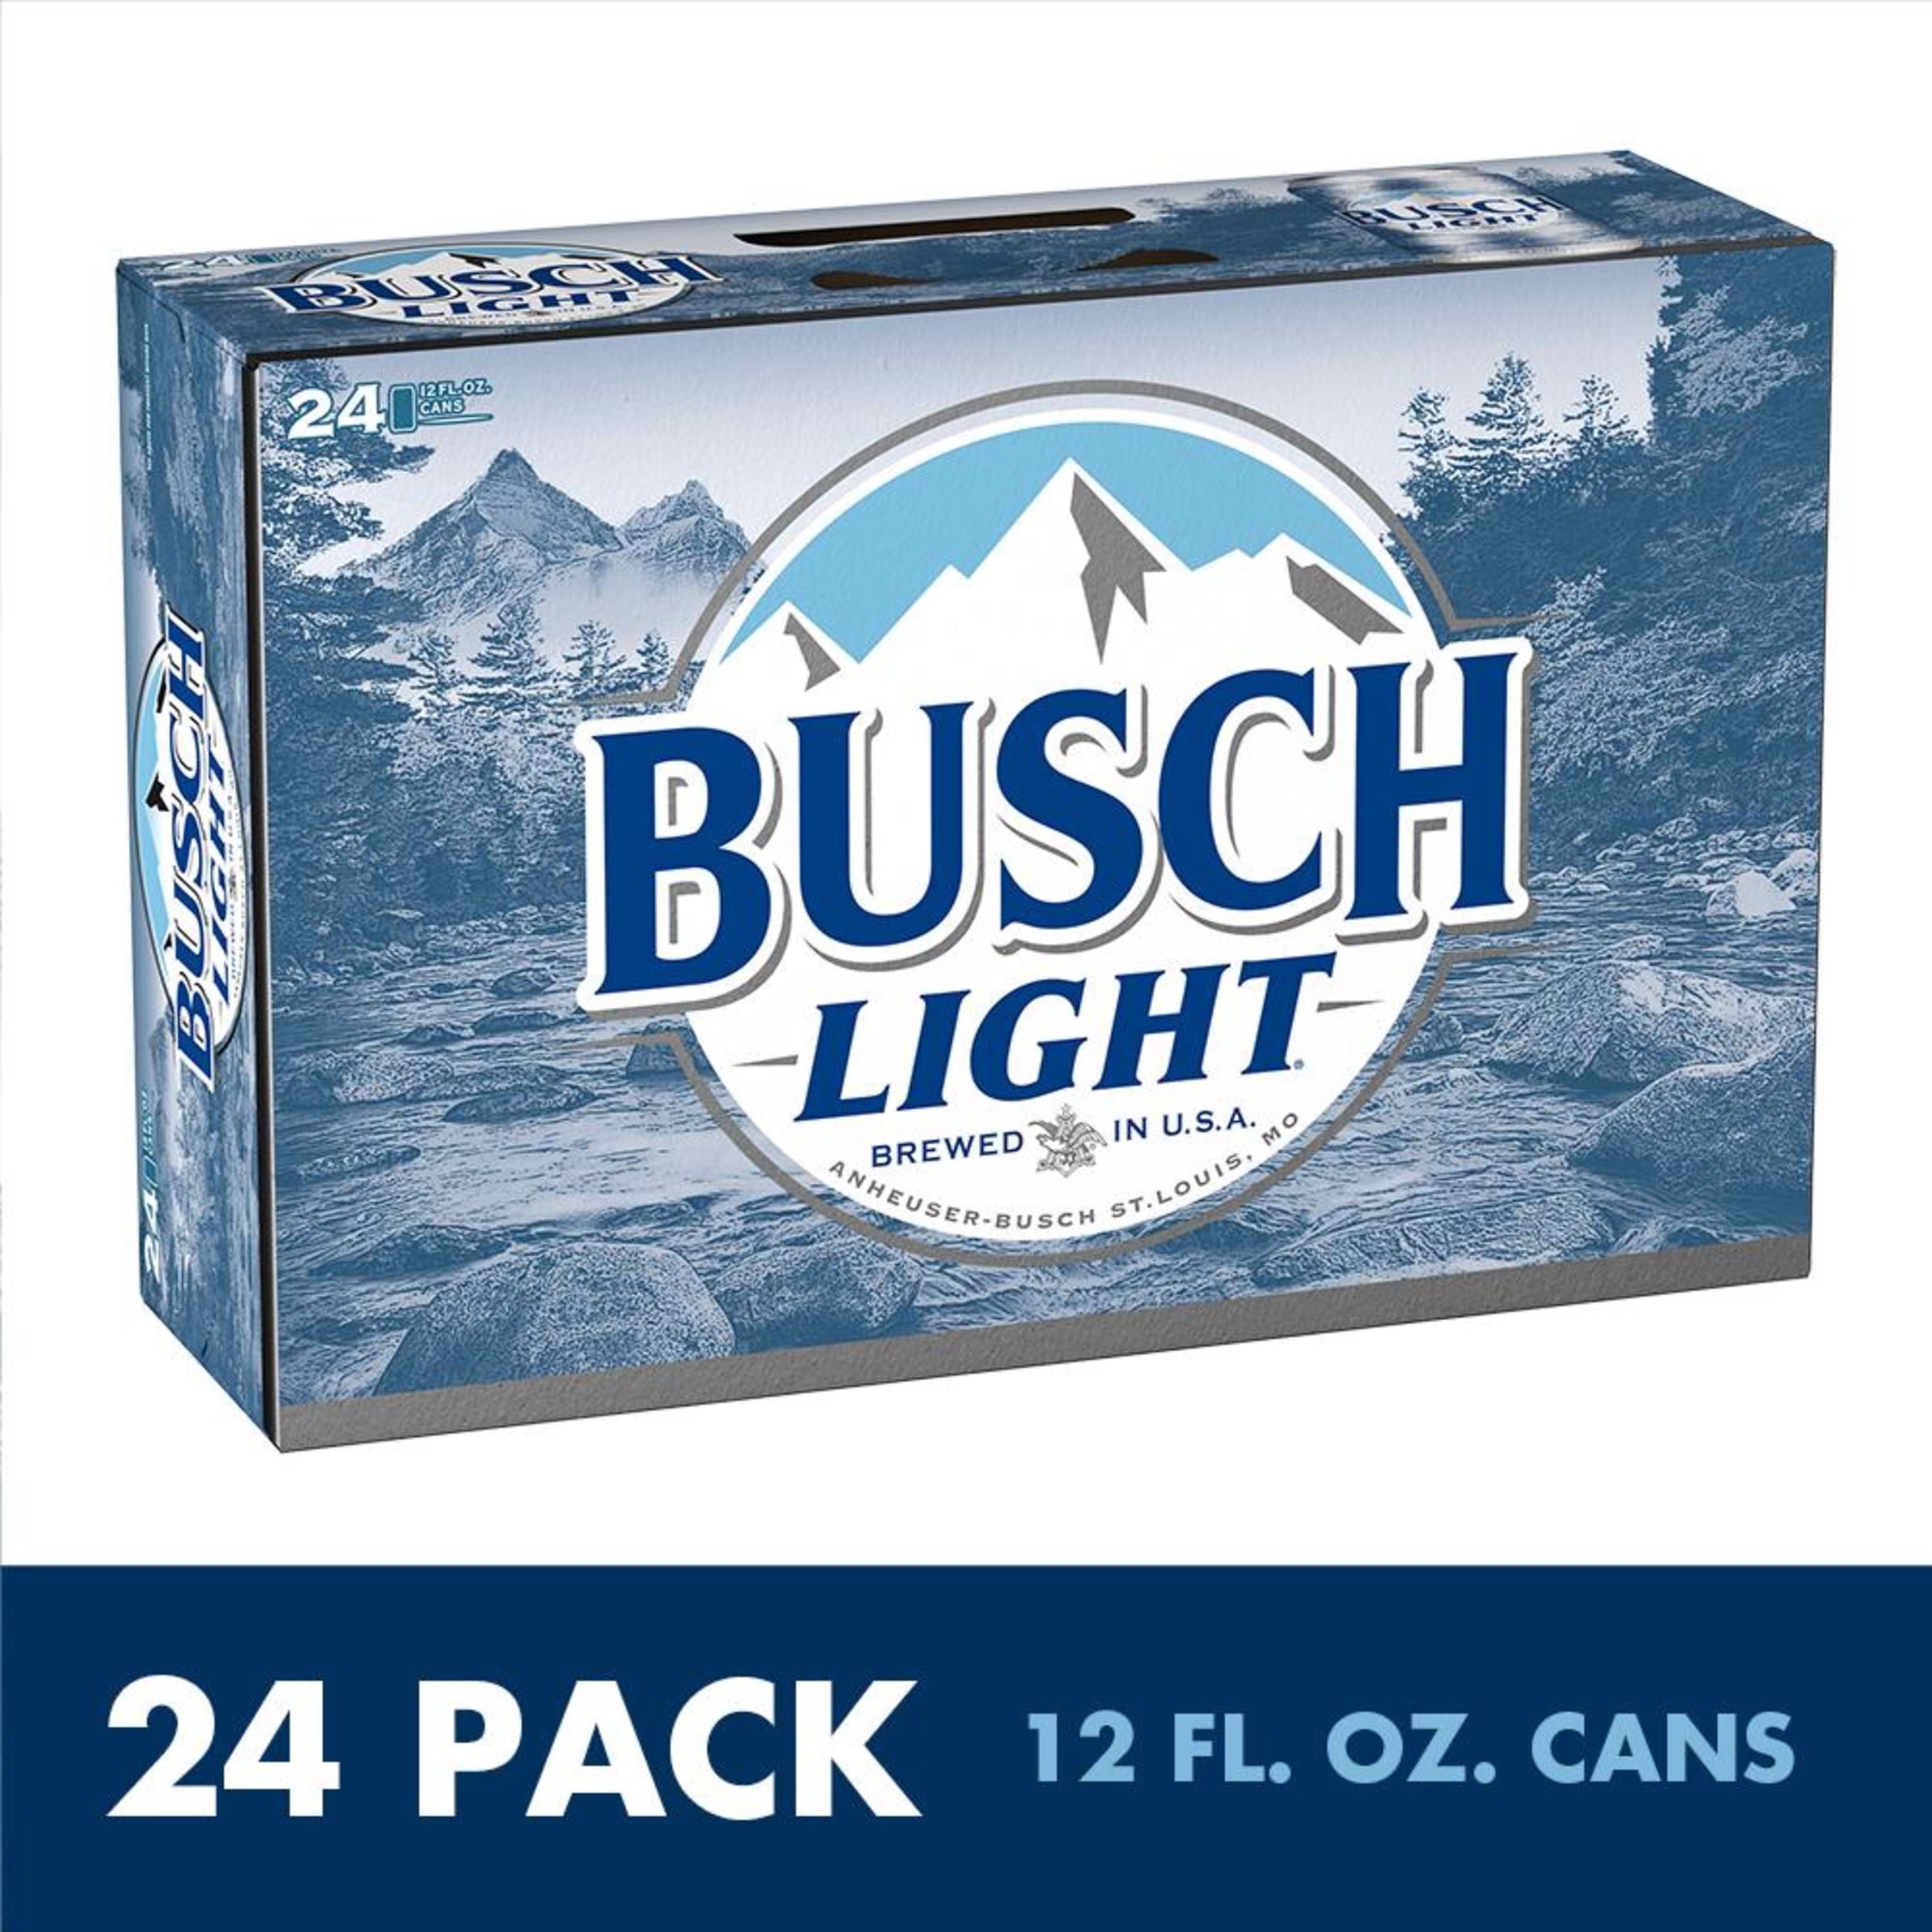 Busch Light Beer, 24 Pack Beer, 12 FL OZ Cans